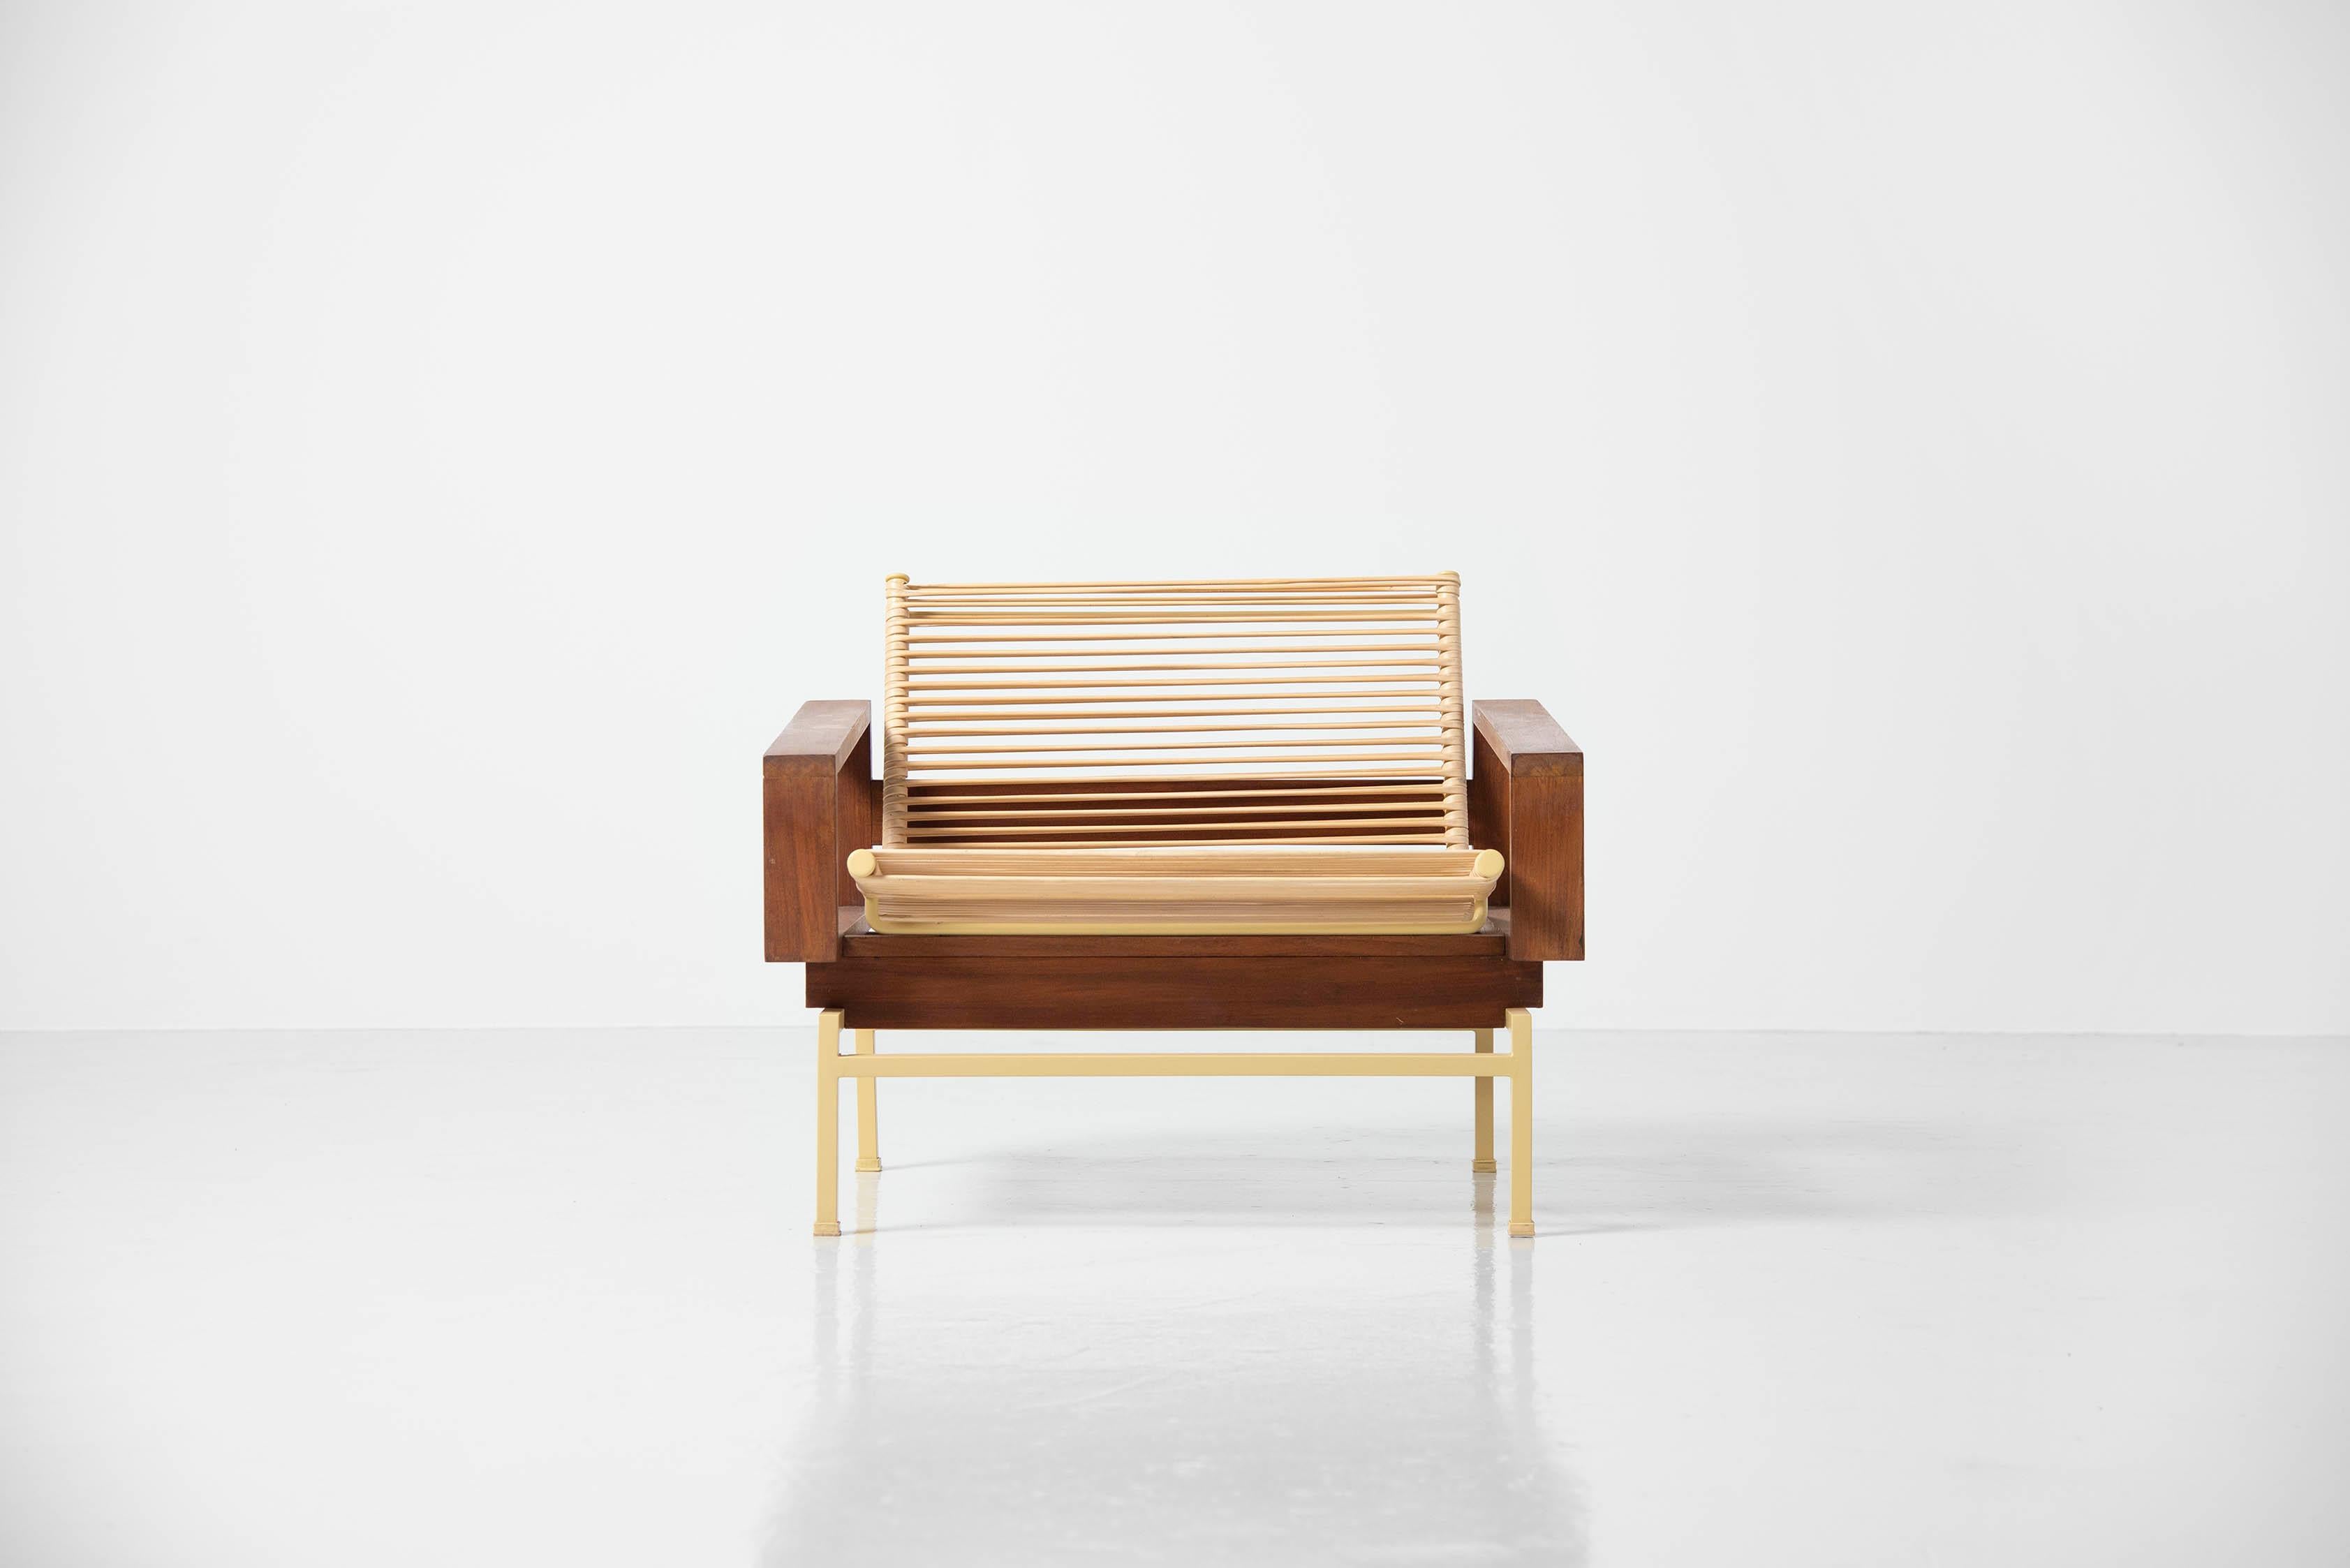 Äußerst seltener und exquisiter Sessel Modell 183 'Miami' entworfen von Rudolf Wolf und hergestellt von Rohé Noordwolde, Holland 1960. Dieser atemberaubende Stuhl hat eine erstaunliche Kombination von Materialien, die diesen Stuhl sehr